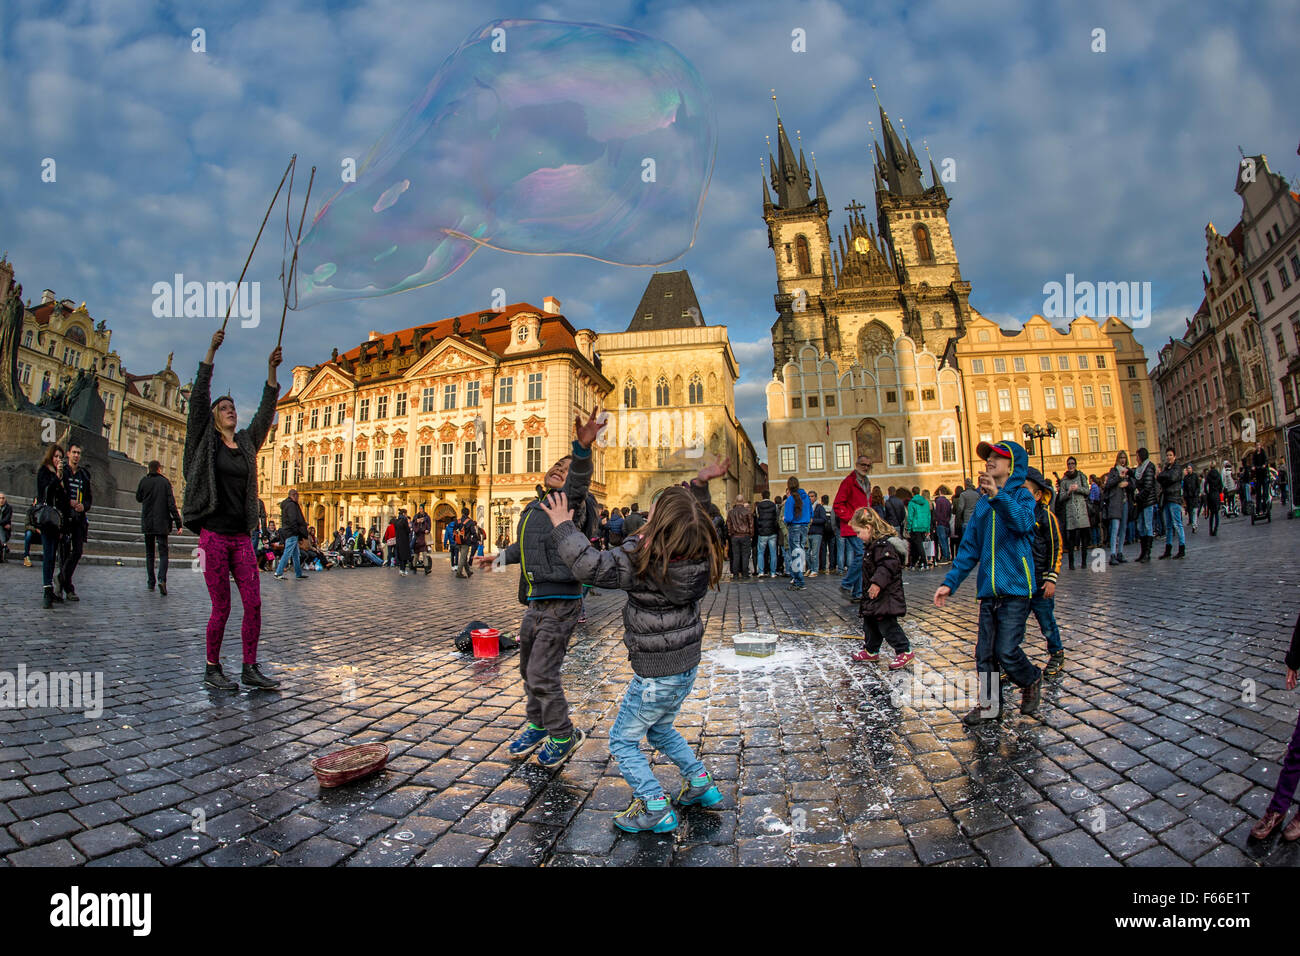 Huge bubbles being blown in Staroměstské náměstí Stock Photo